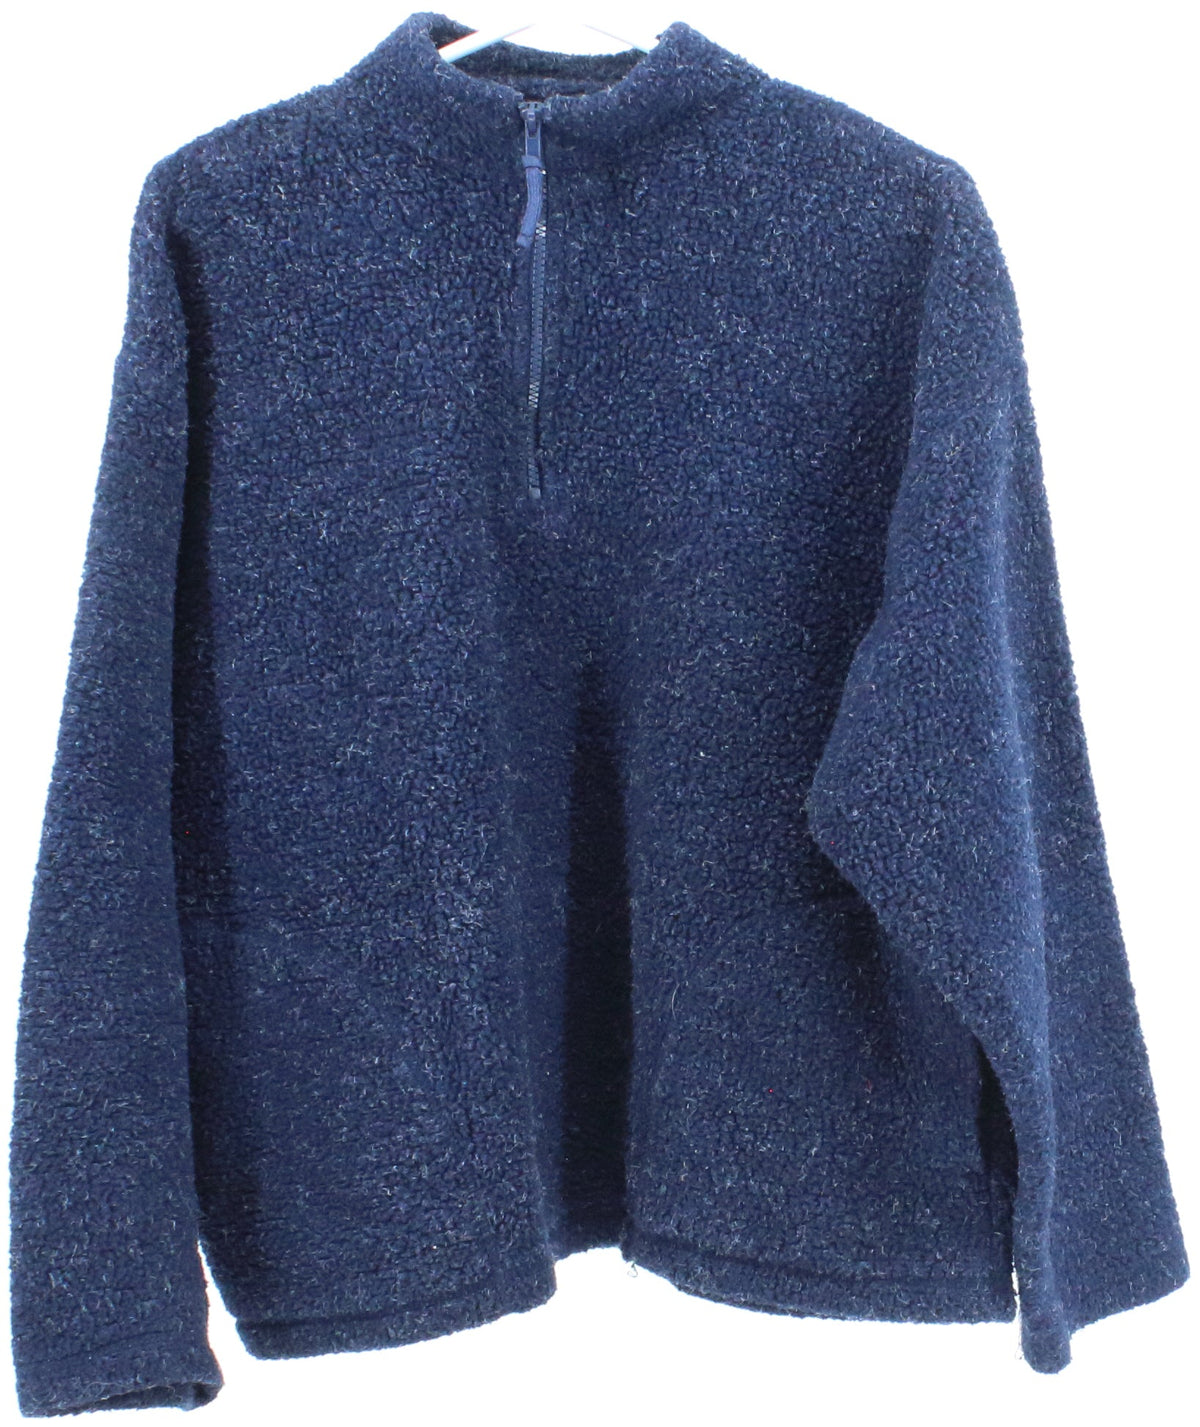 Premier International Navy Blue Half Zip Women's Fleece